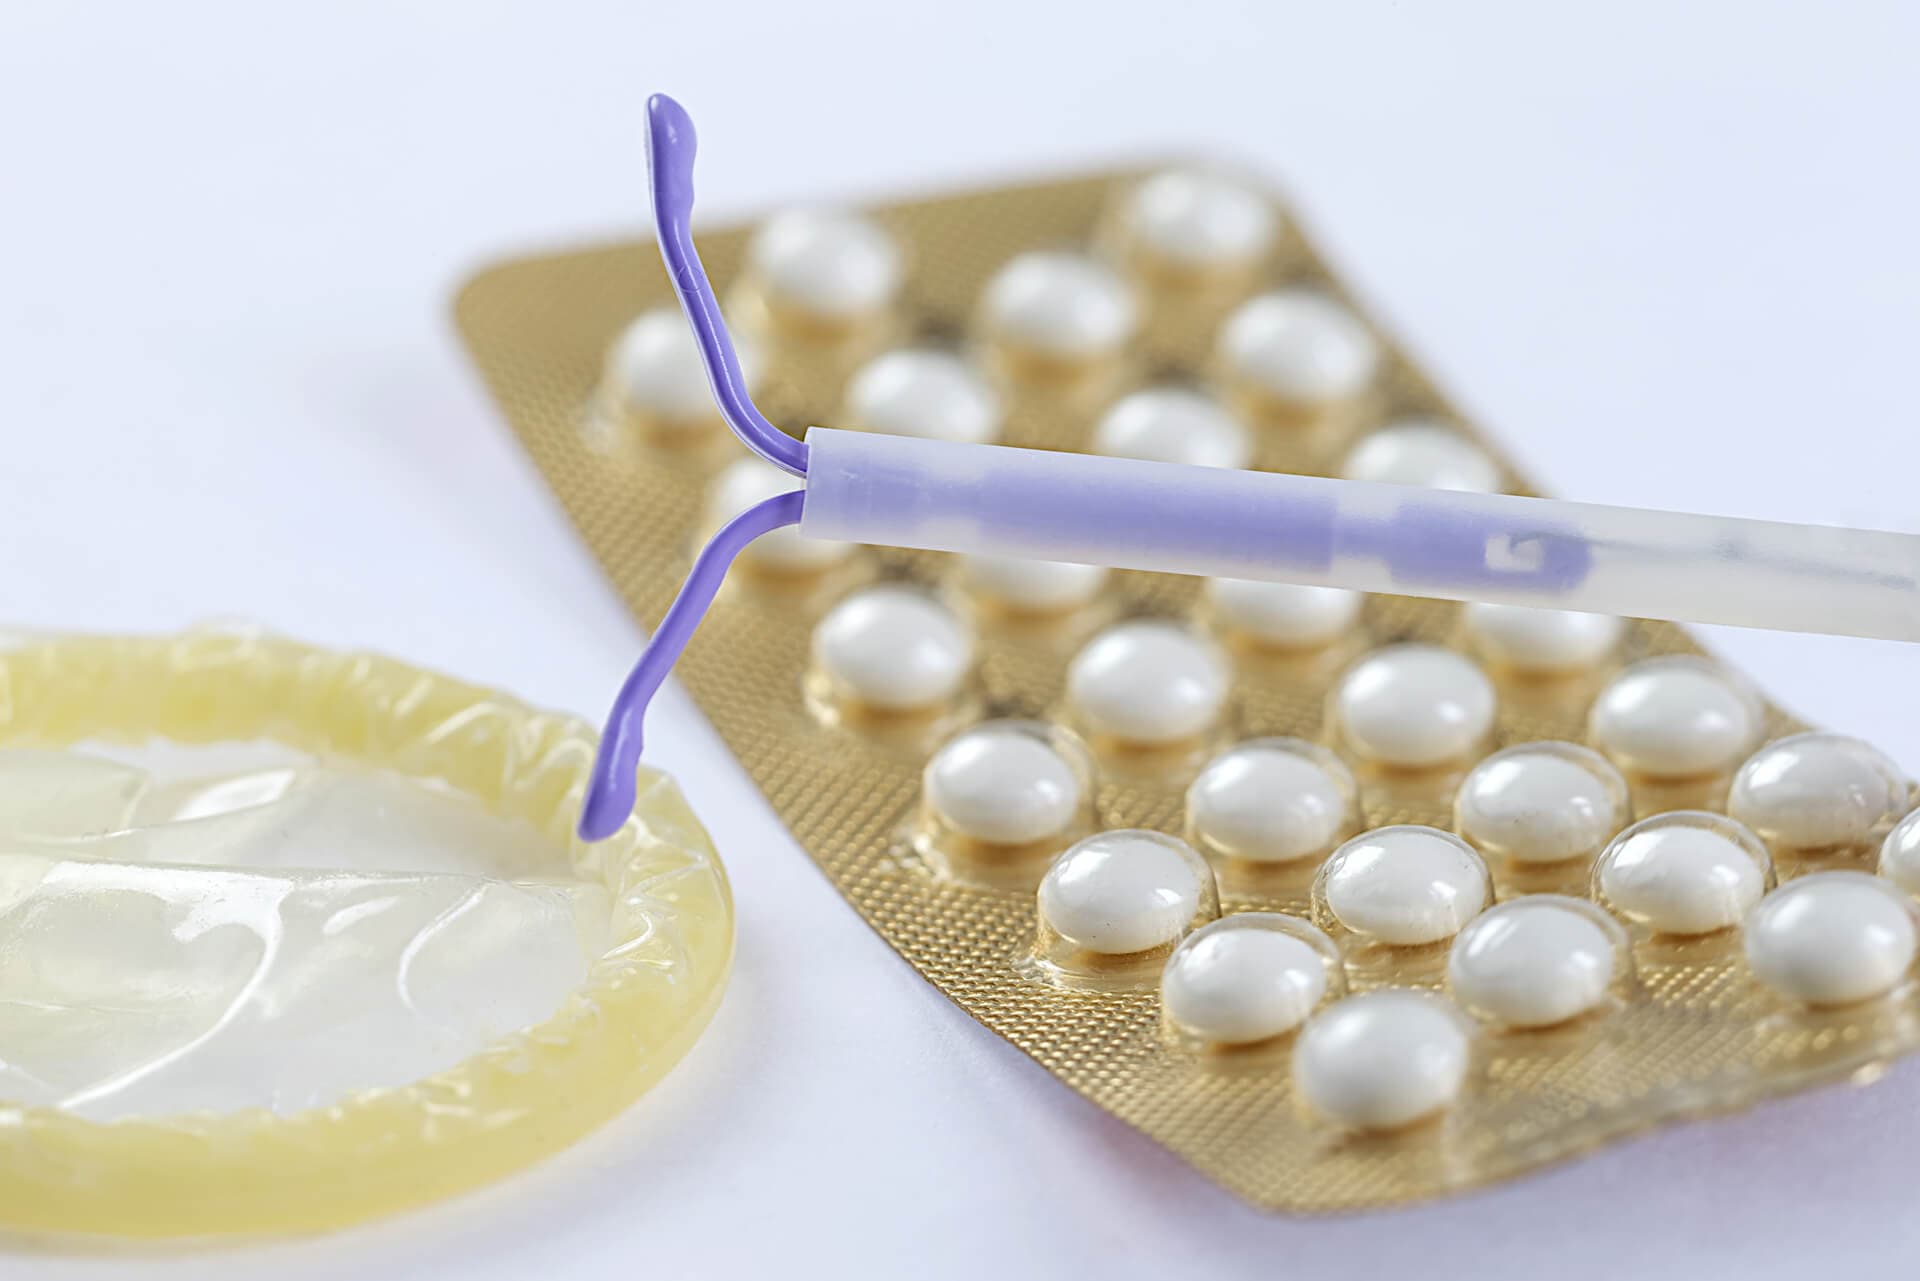  Diferentes métodos anticonceptivos